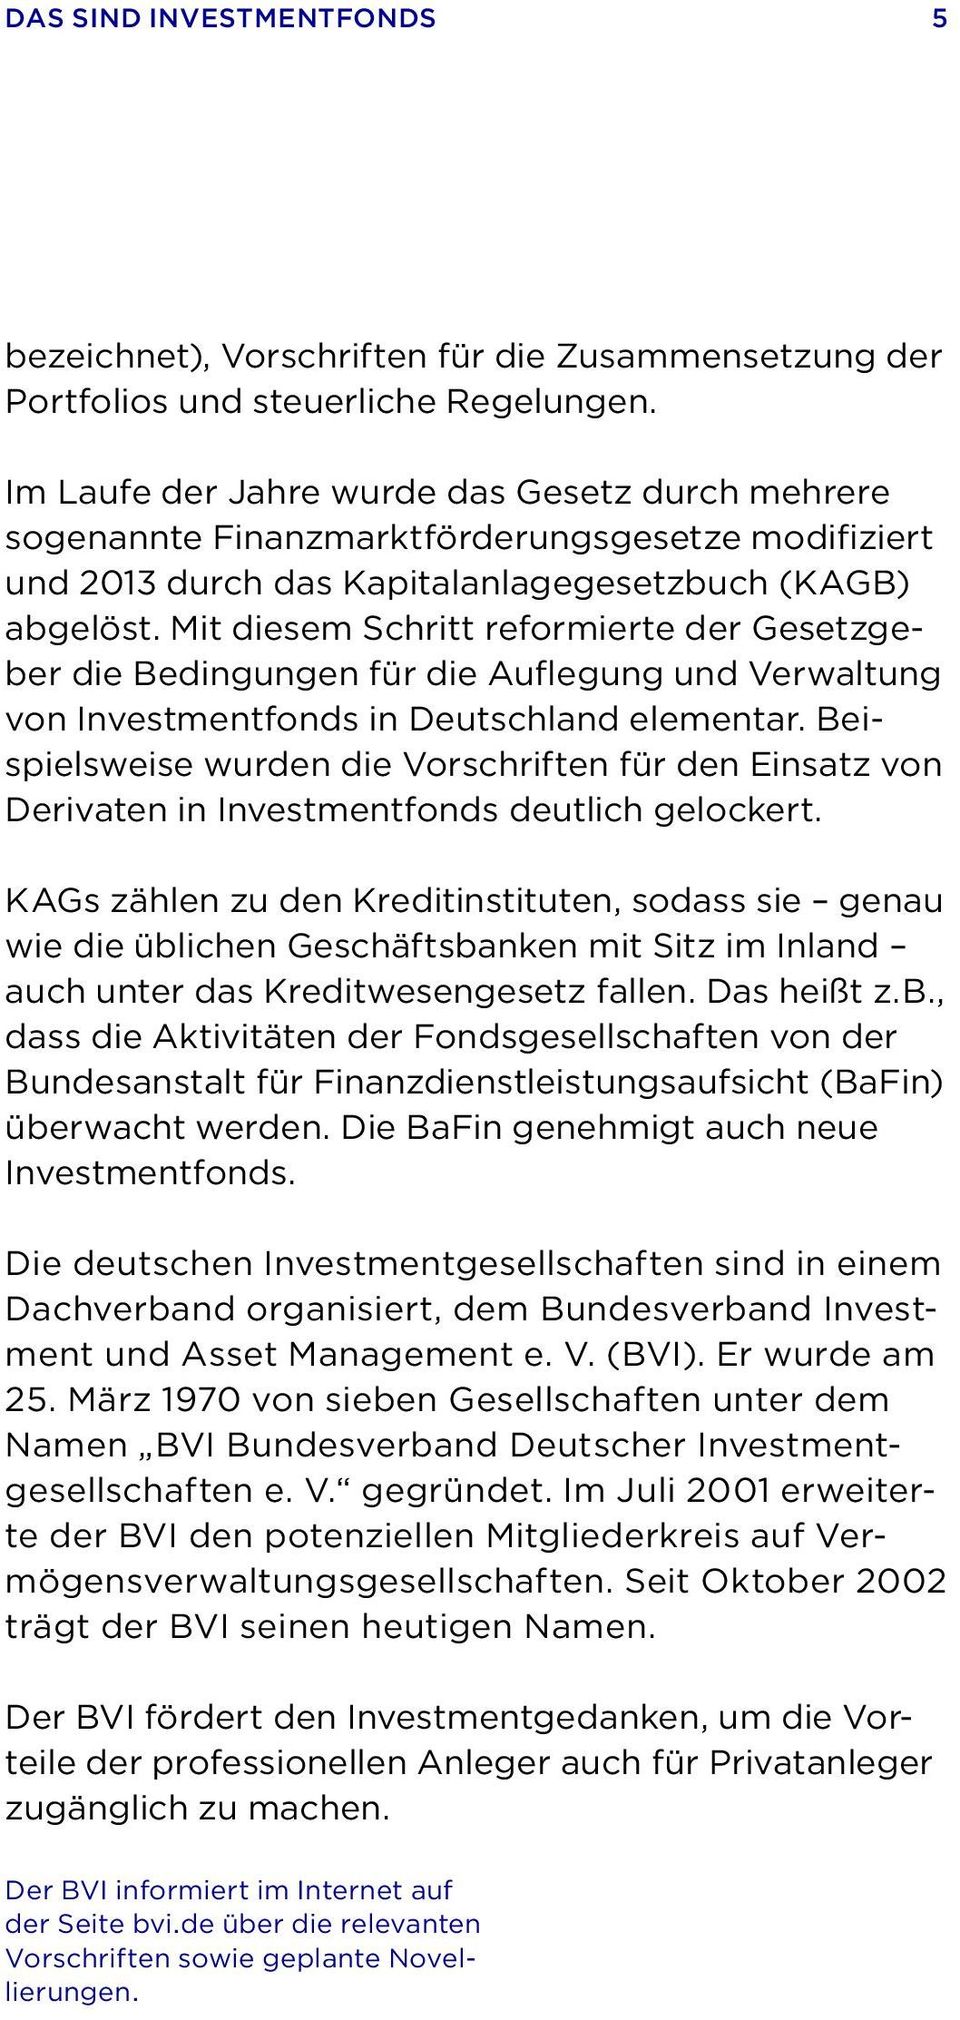 Mit diesem Schritt reformierte der Gesetzgeber die Bedingungen für die Auflegung und Verwaltung von Investmentfonds in Deutschland elementar.